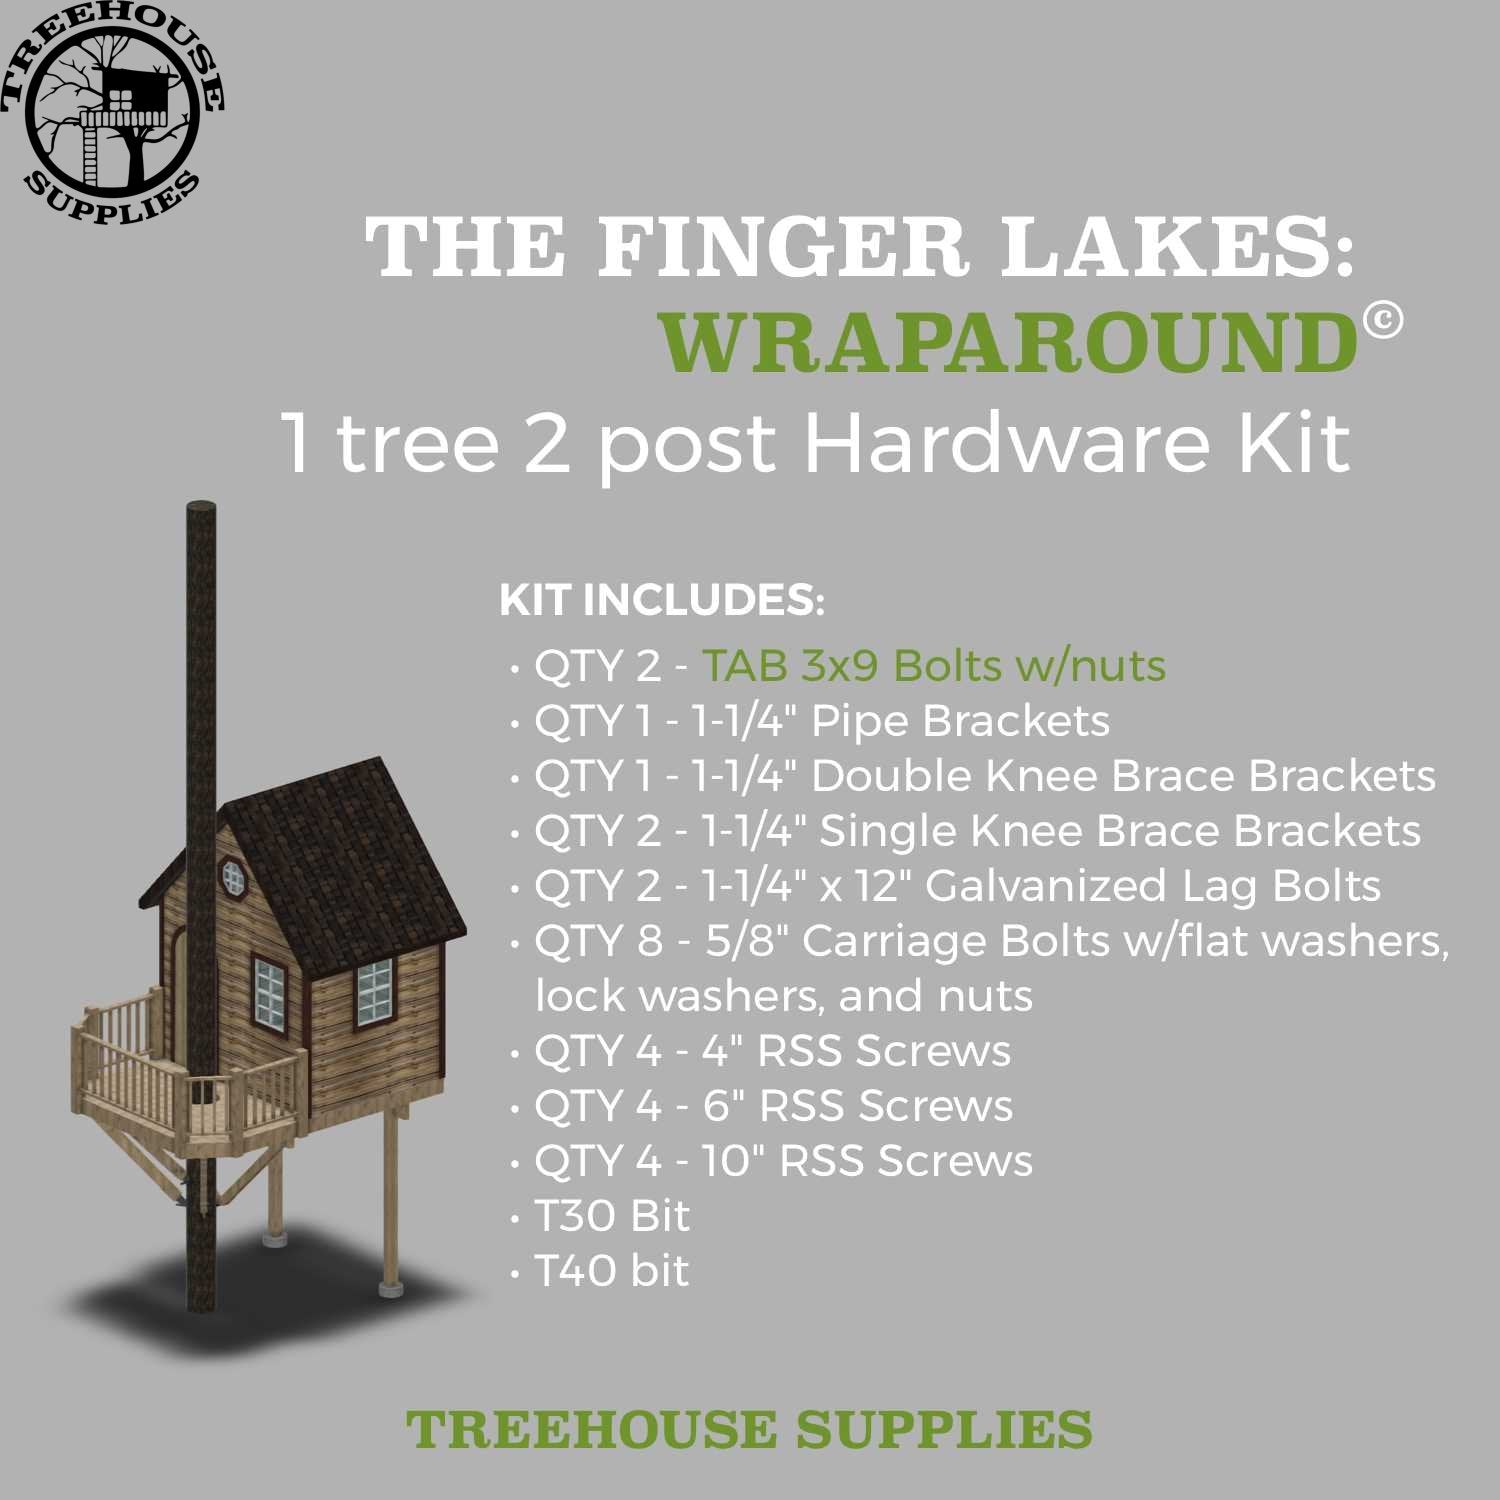 Treehouse Supplies THE FINGER LAKES: WRAPAROUND © 1 tree 2 post hardware kit 